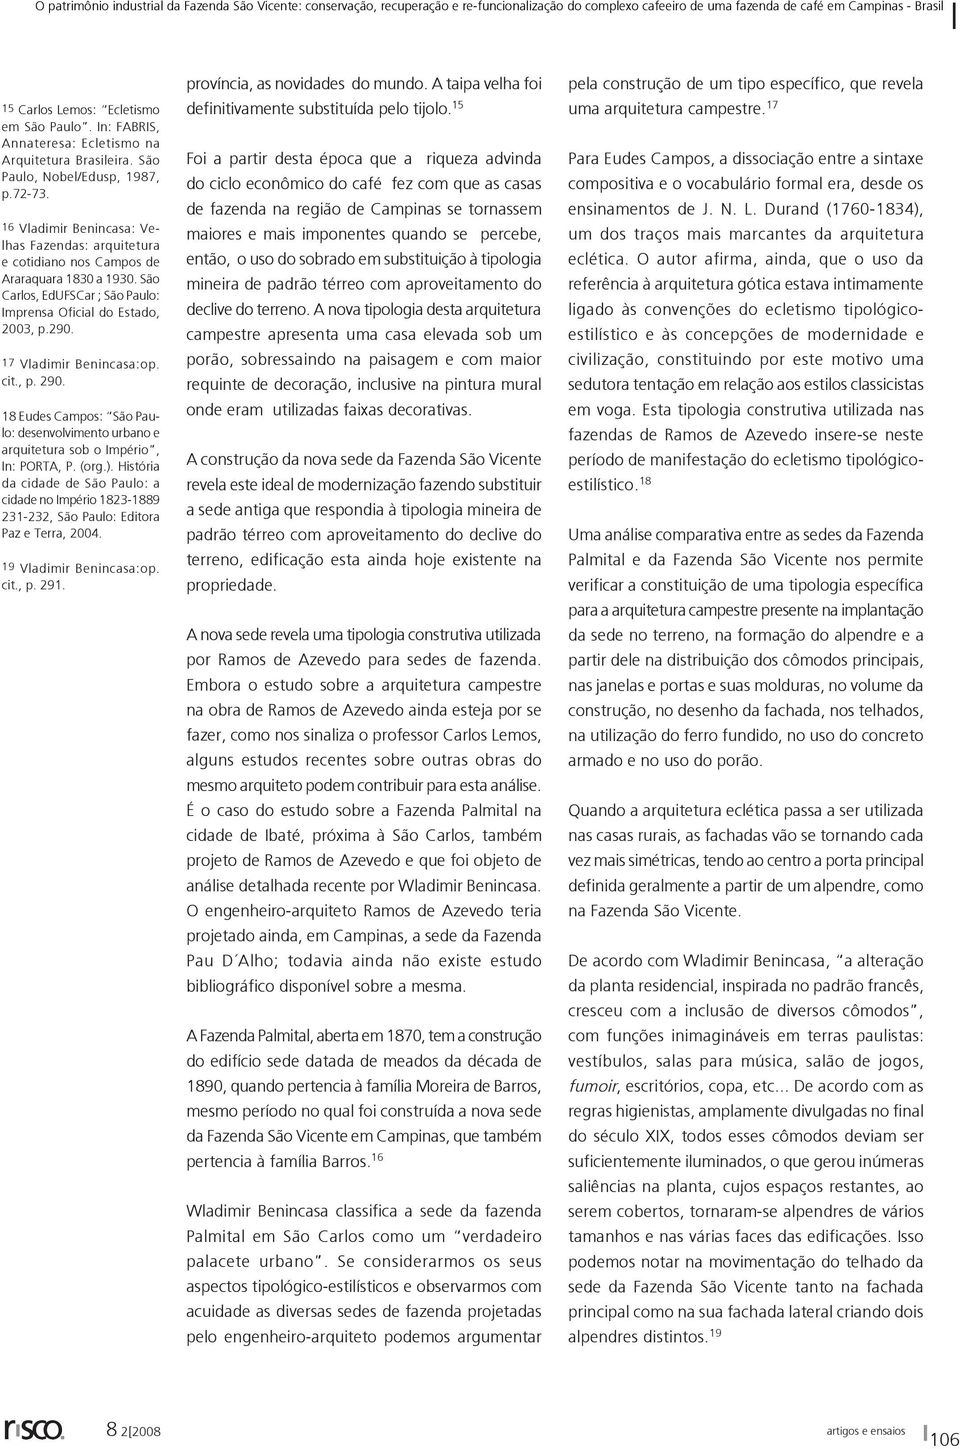 17 Vladimir Benincasa:op. cit., p. 290. 18 Eudes Campos: São Paulo: desenvolvimento urbano e arquitetura sob o Império, In: PORTA, P. (org.).